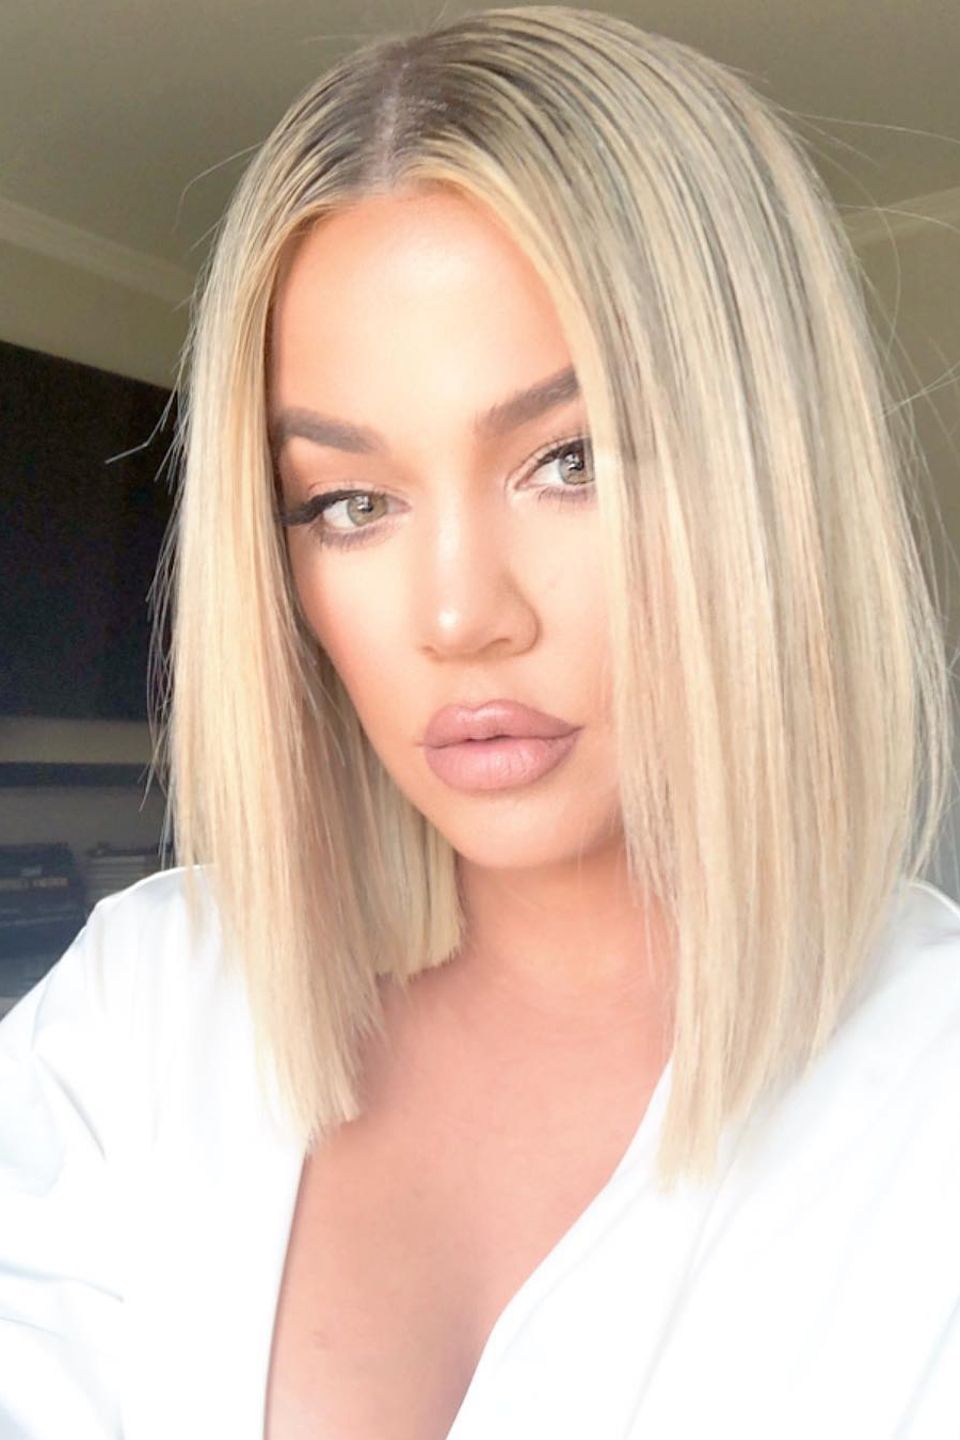 Ja, sie hat es wieder getan! Khloé Kardashian hat sich von ihrer langen Haarpracht getrennt und trägt wieder einen Bob. Das Beweisfoto teilt sie mit ihren Fans auf Instagram, die ihre neue Frisur ebenfalls lieben.